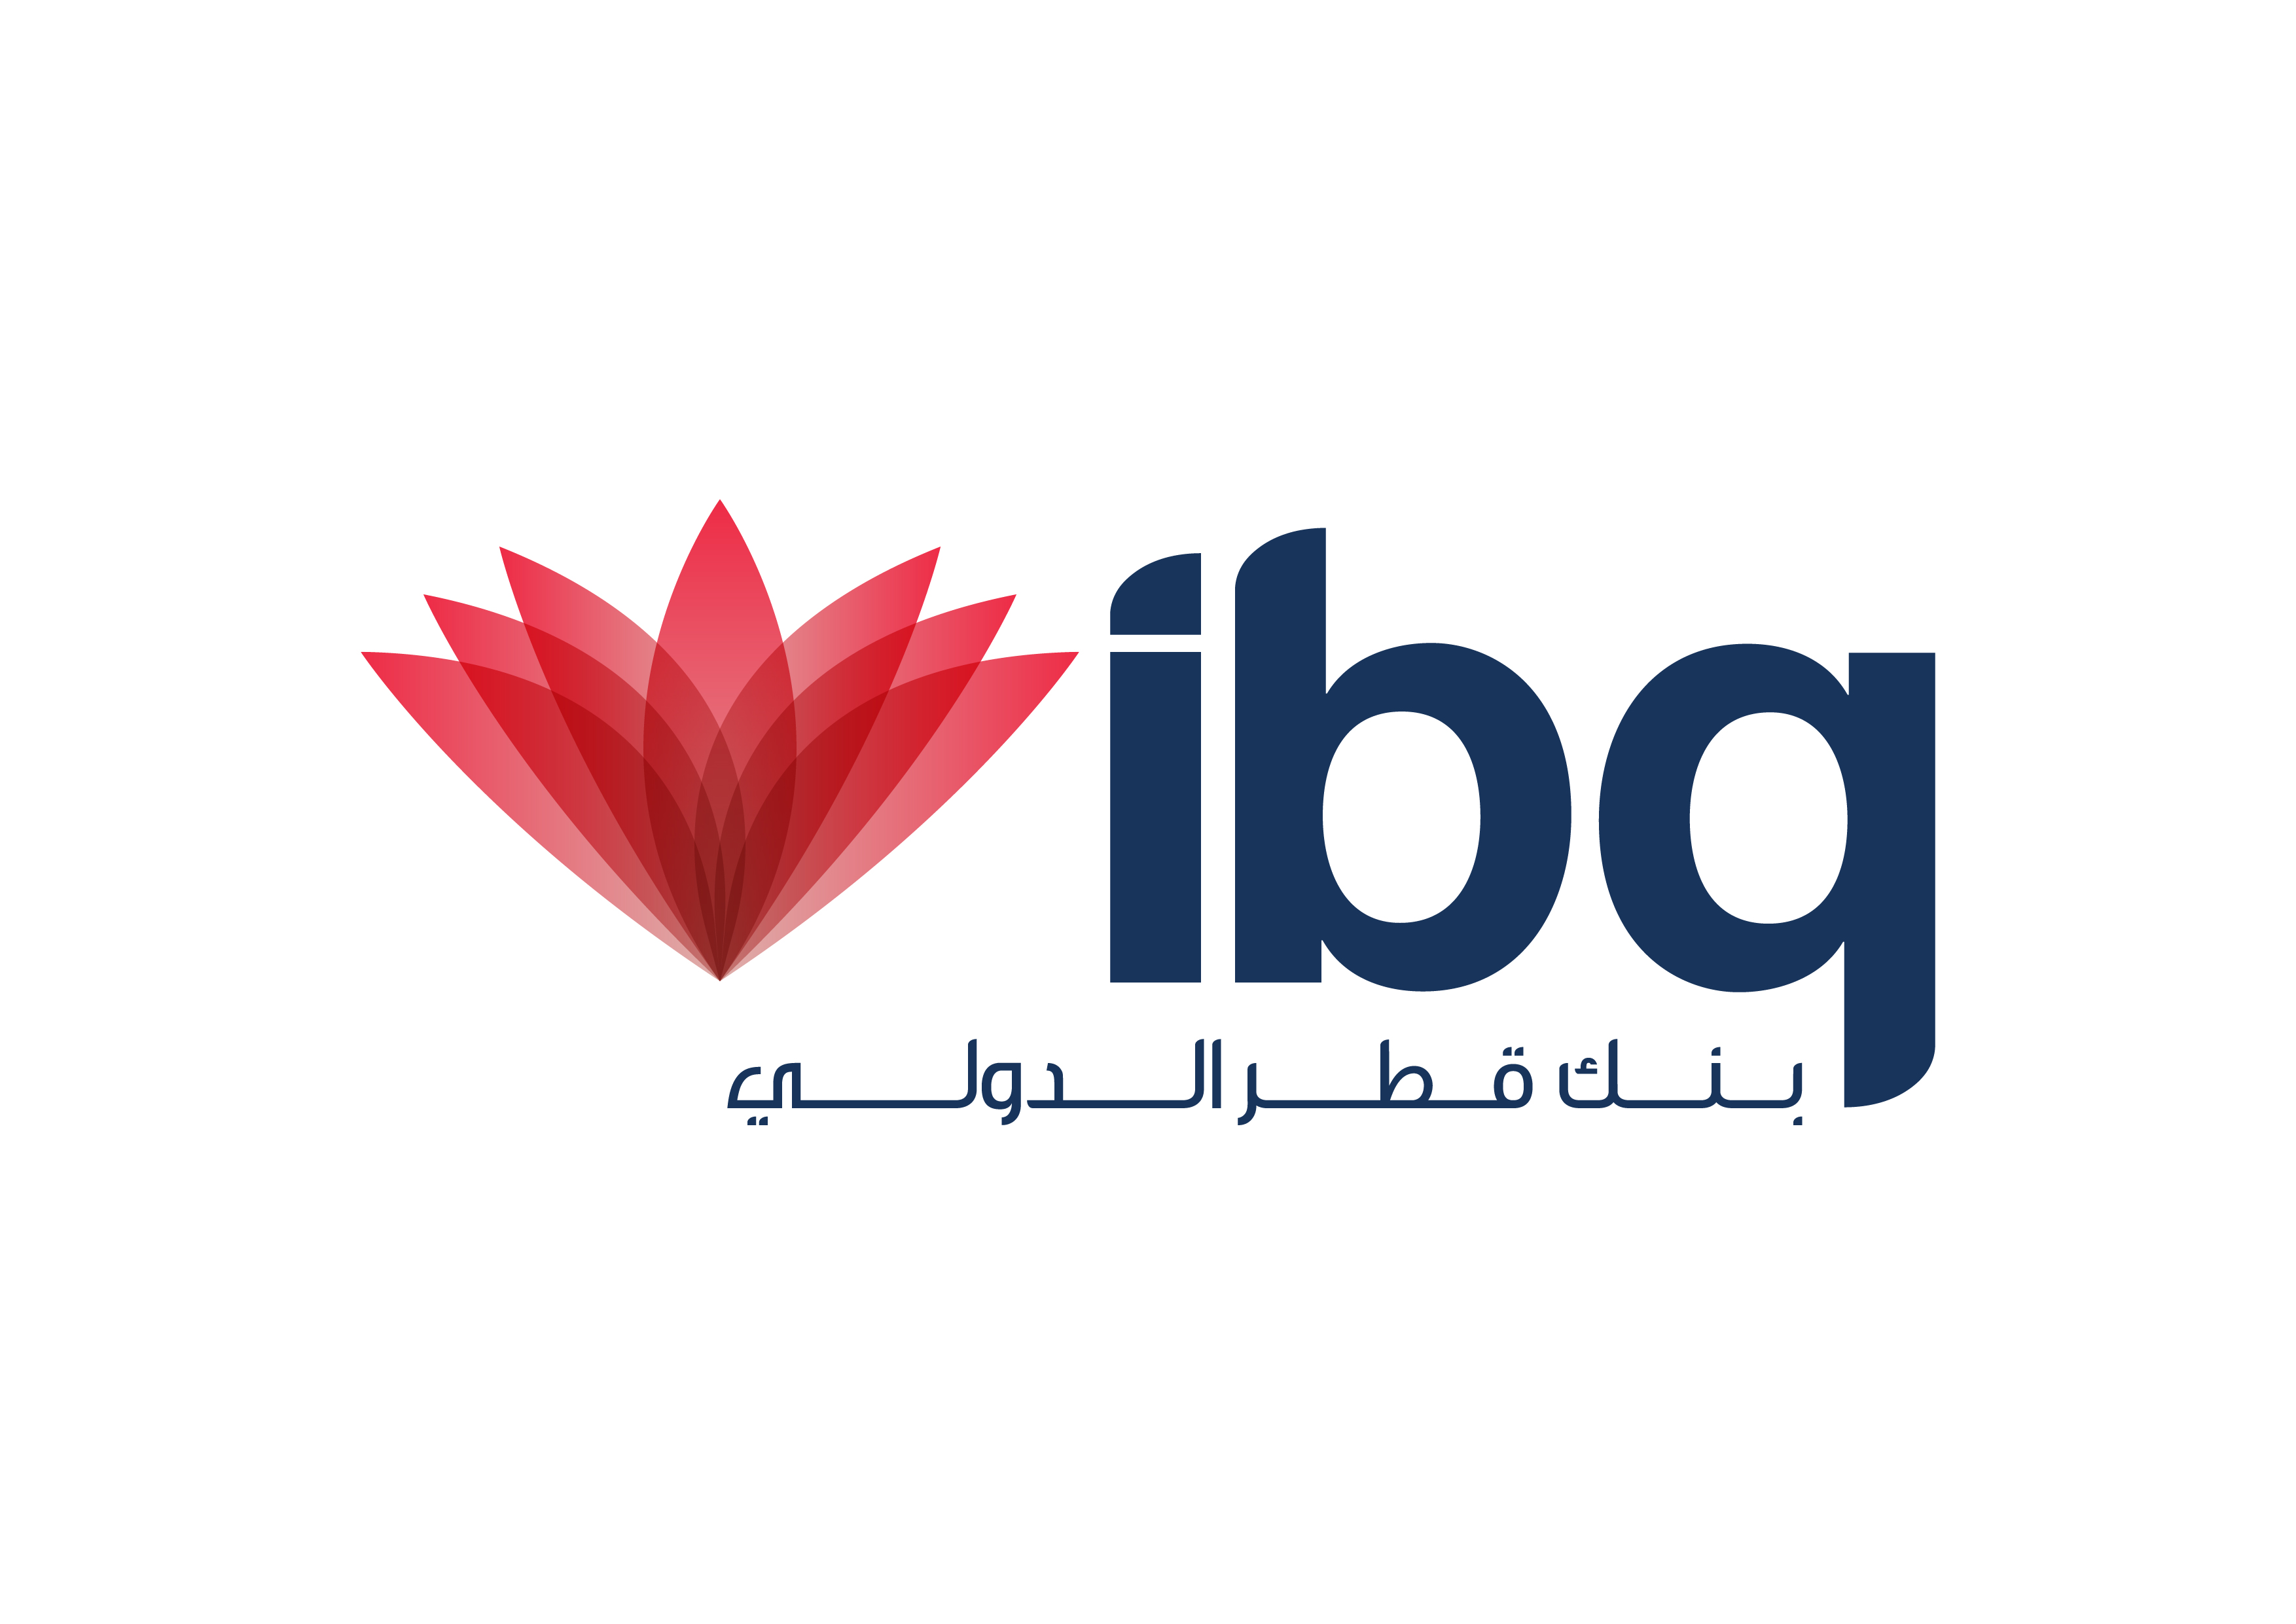 اتفاق اندماج بين بنك بروة وبنك قطر الدولي (ibq)